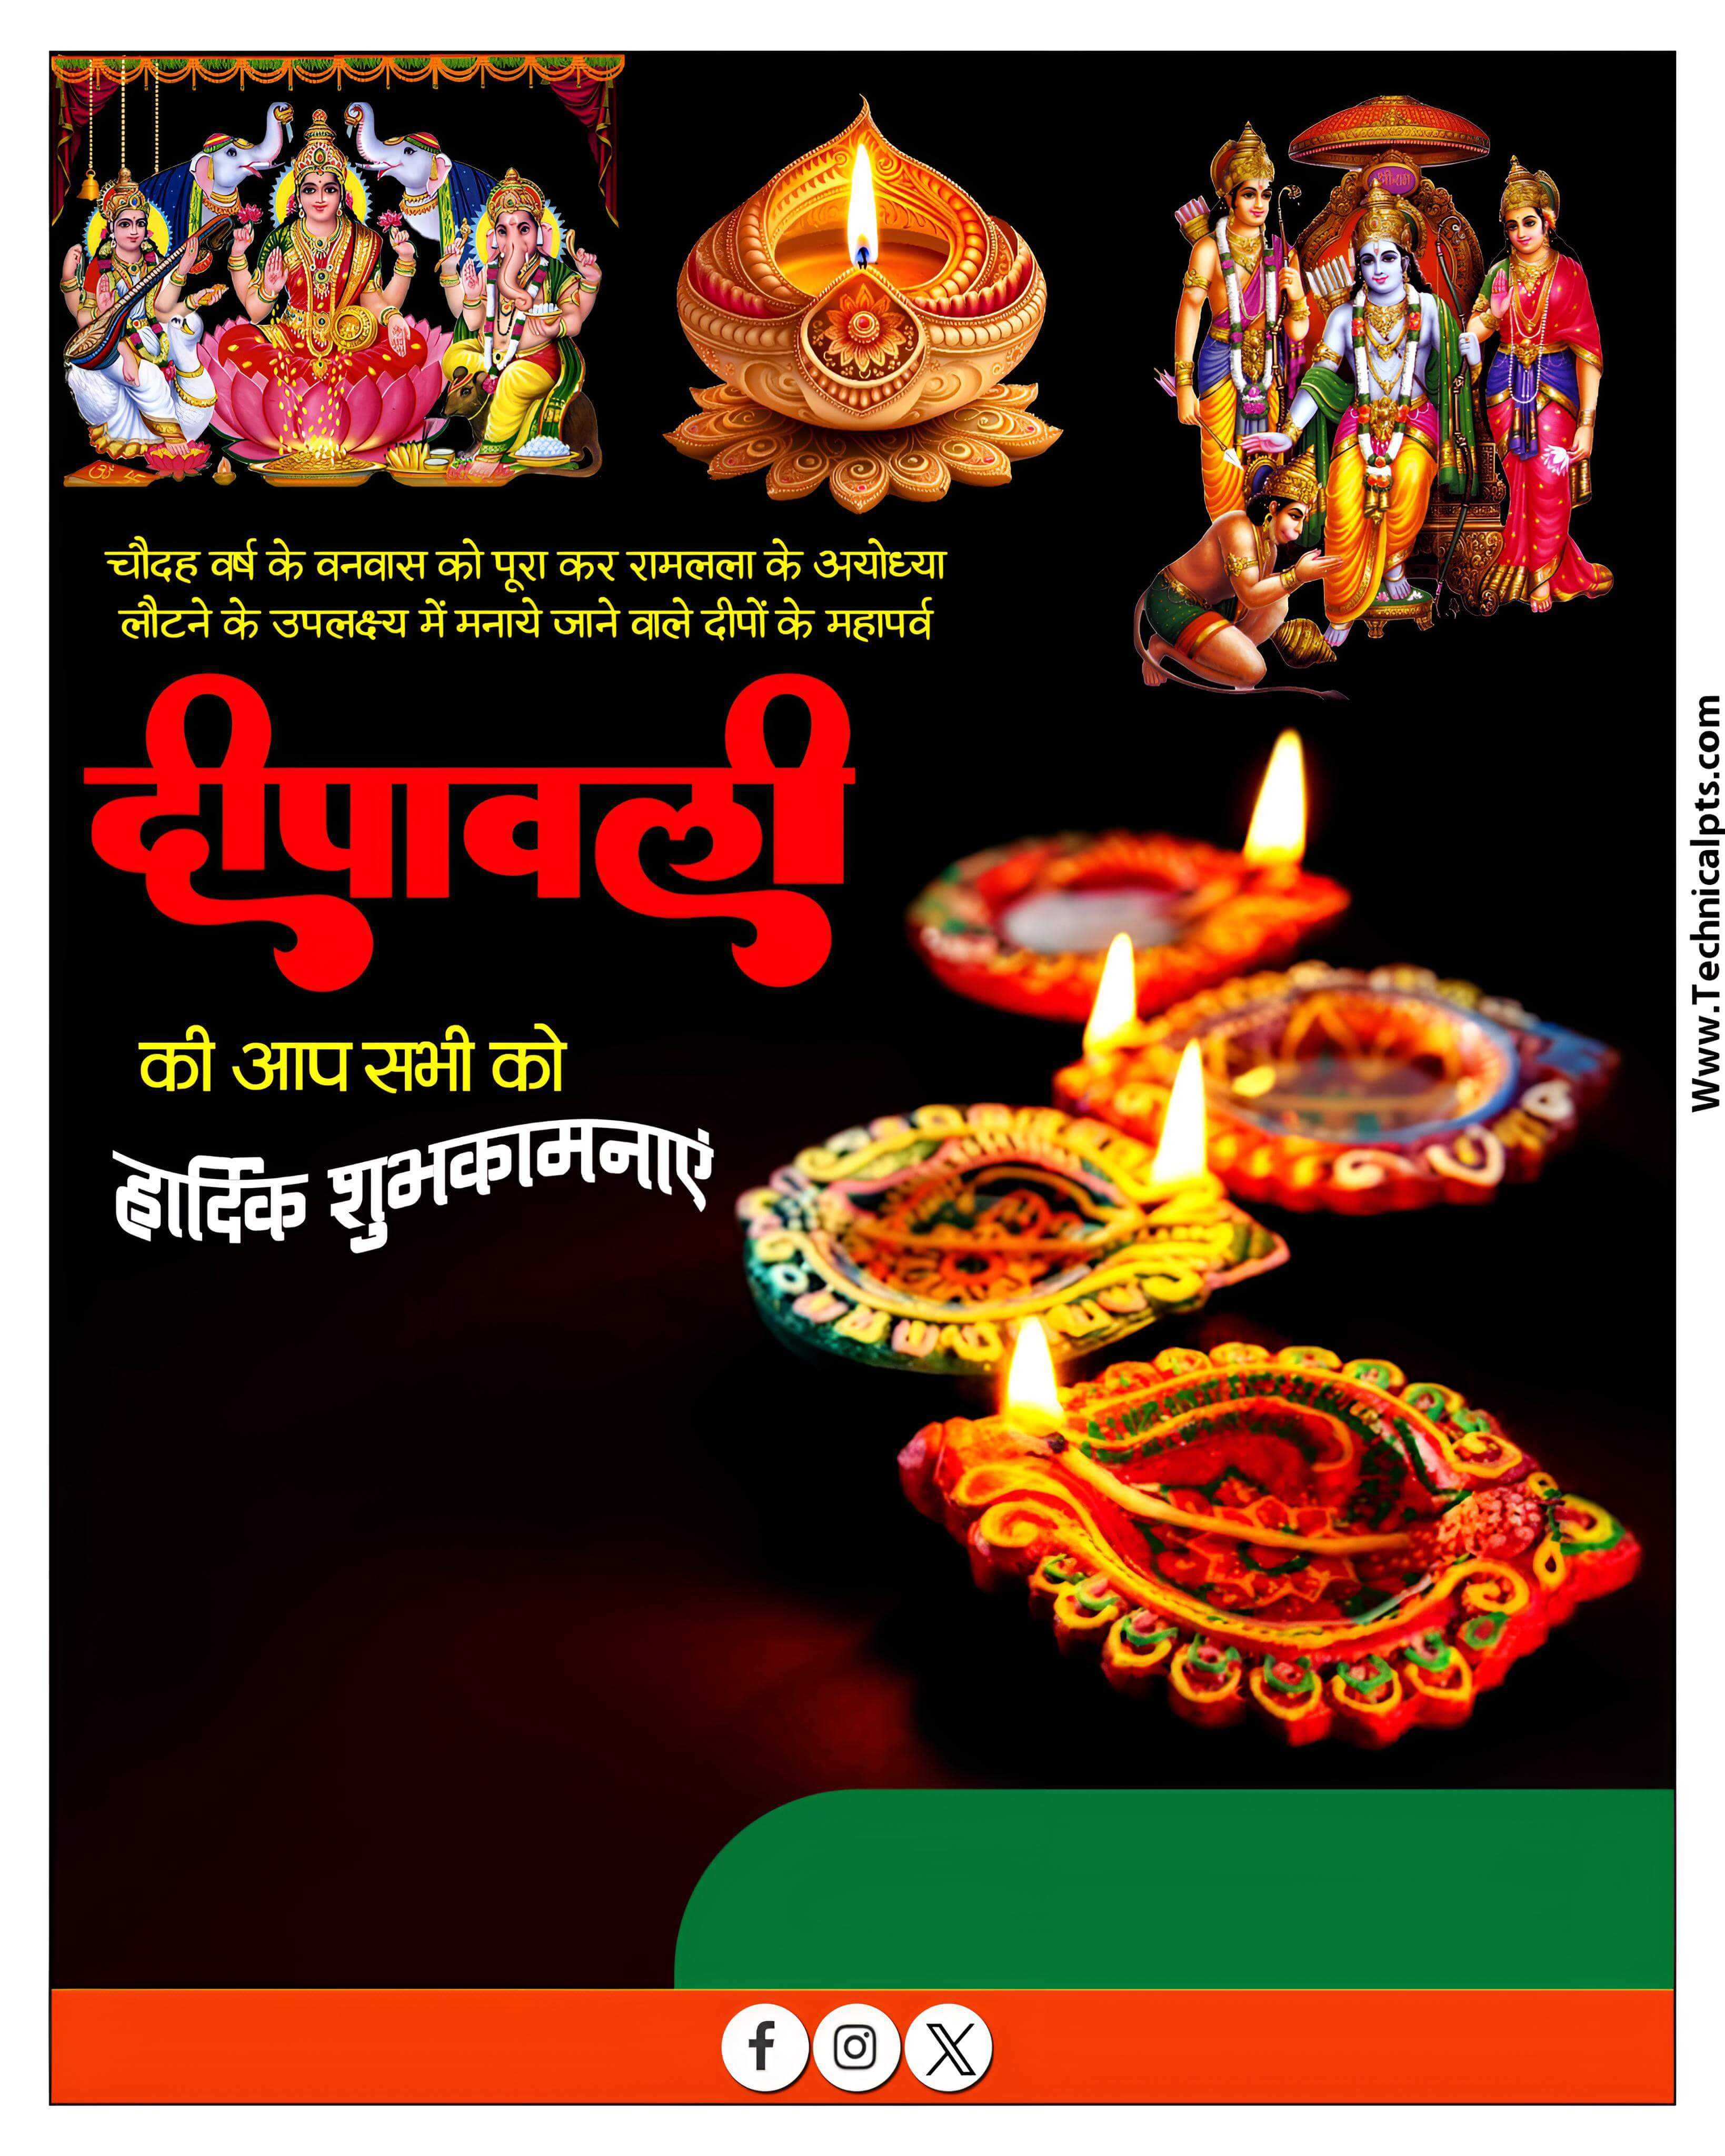 Diwali ka poster banaen mobile se| Diwali poster Plp file download| Diwali ka banner plp file download